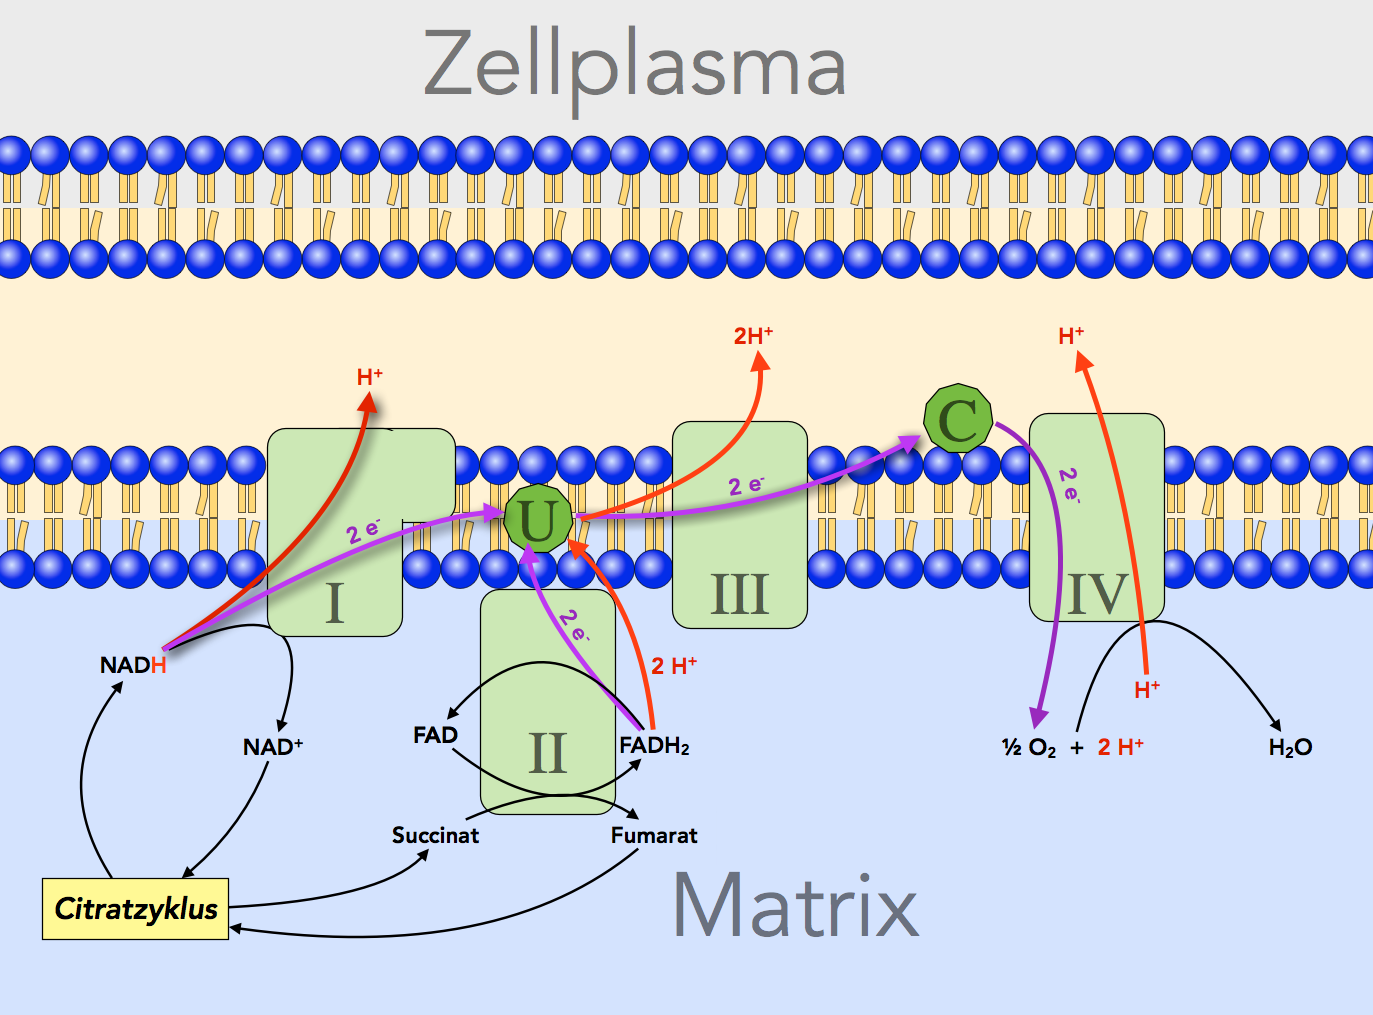 Die vier Proteinkomplexe der inneren Mitochondrienmembran mit dem Protonen- und Elektronentransport